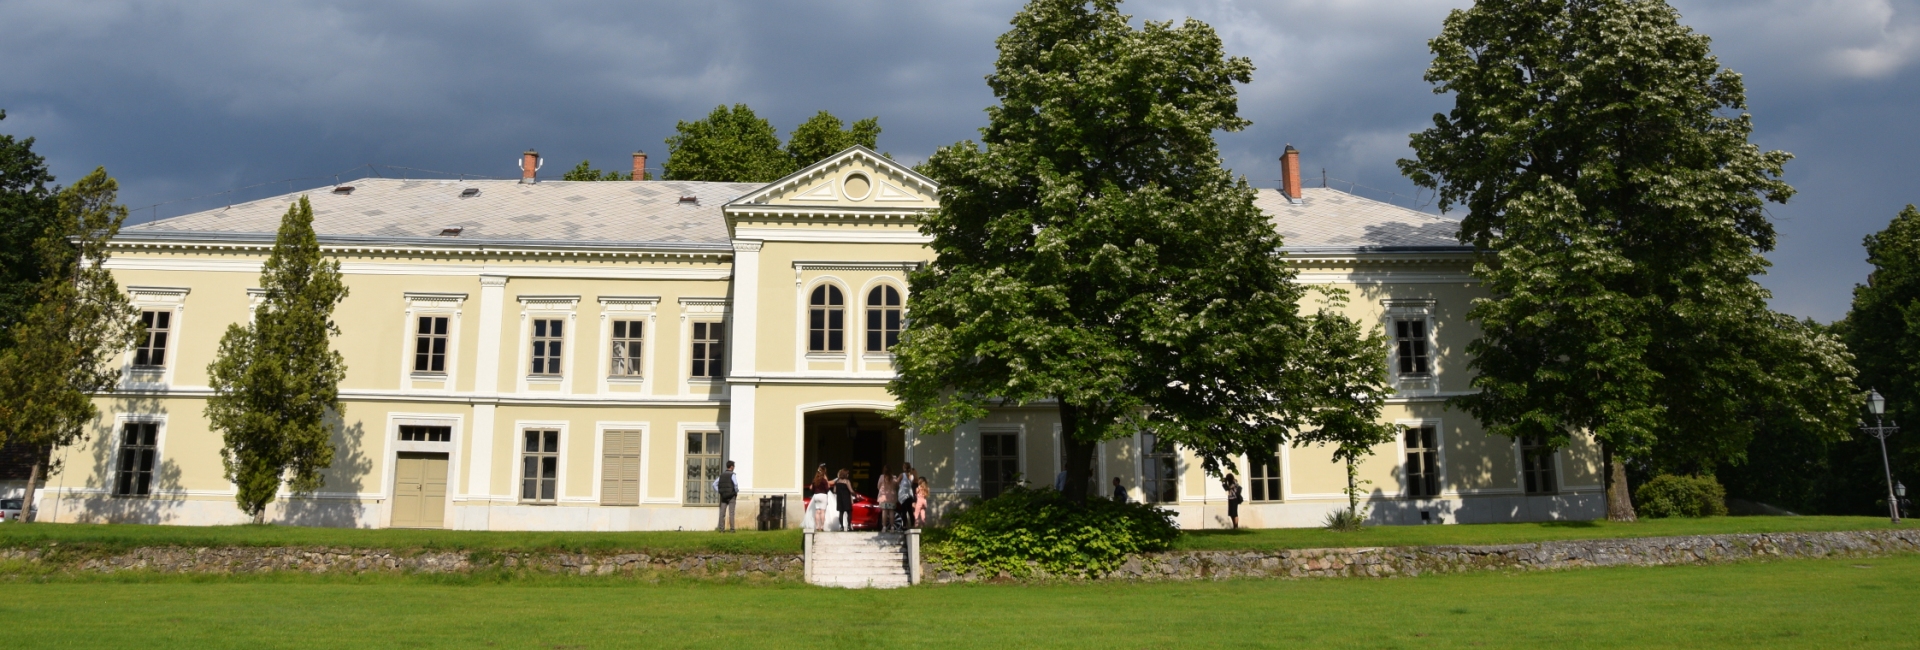 Degenfeld Schonburg Castle